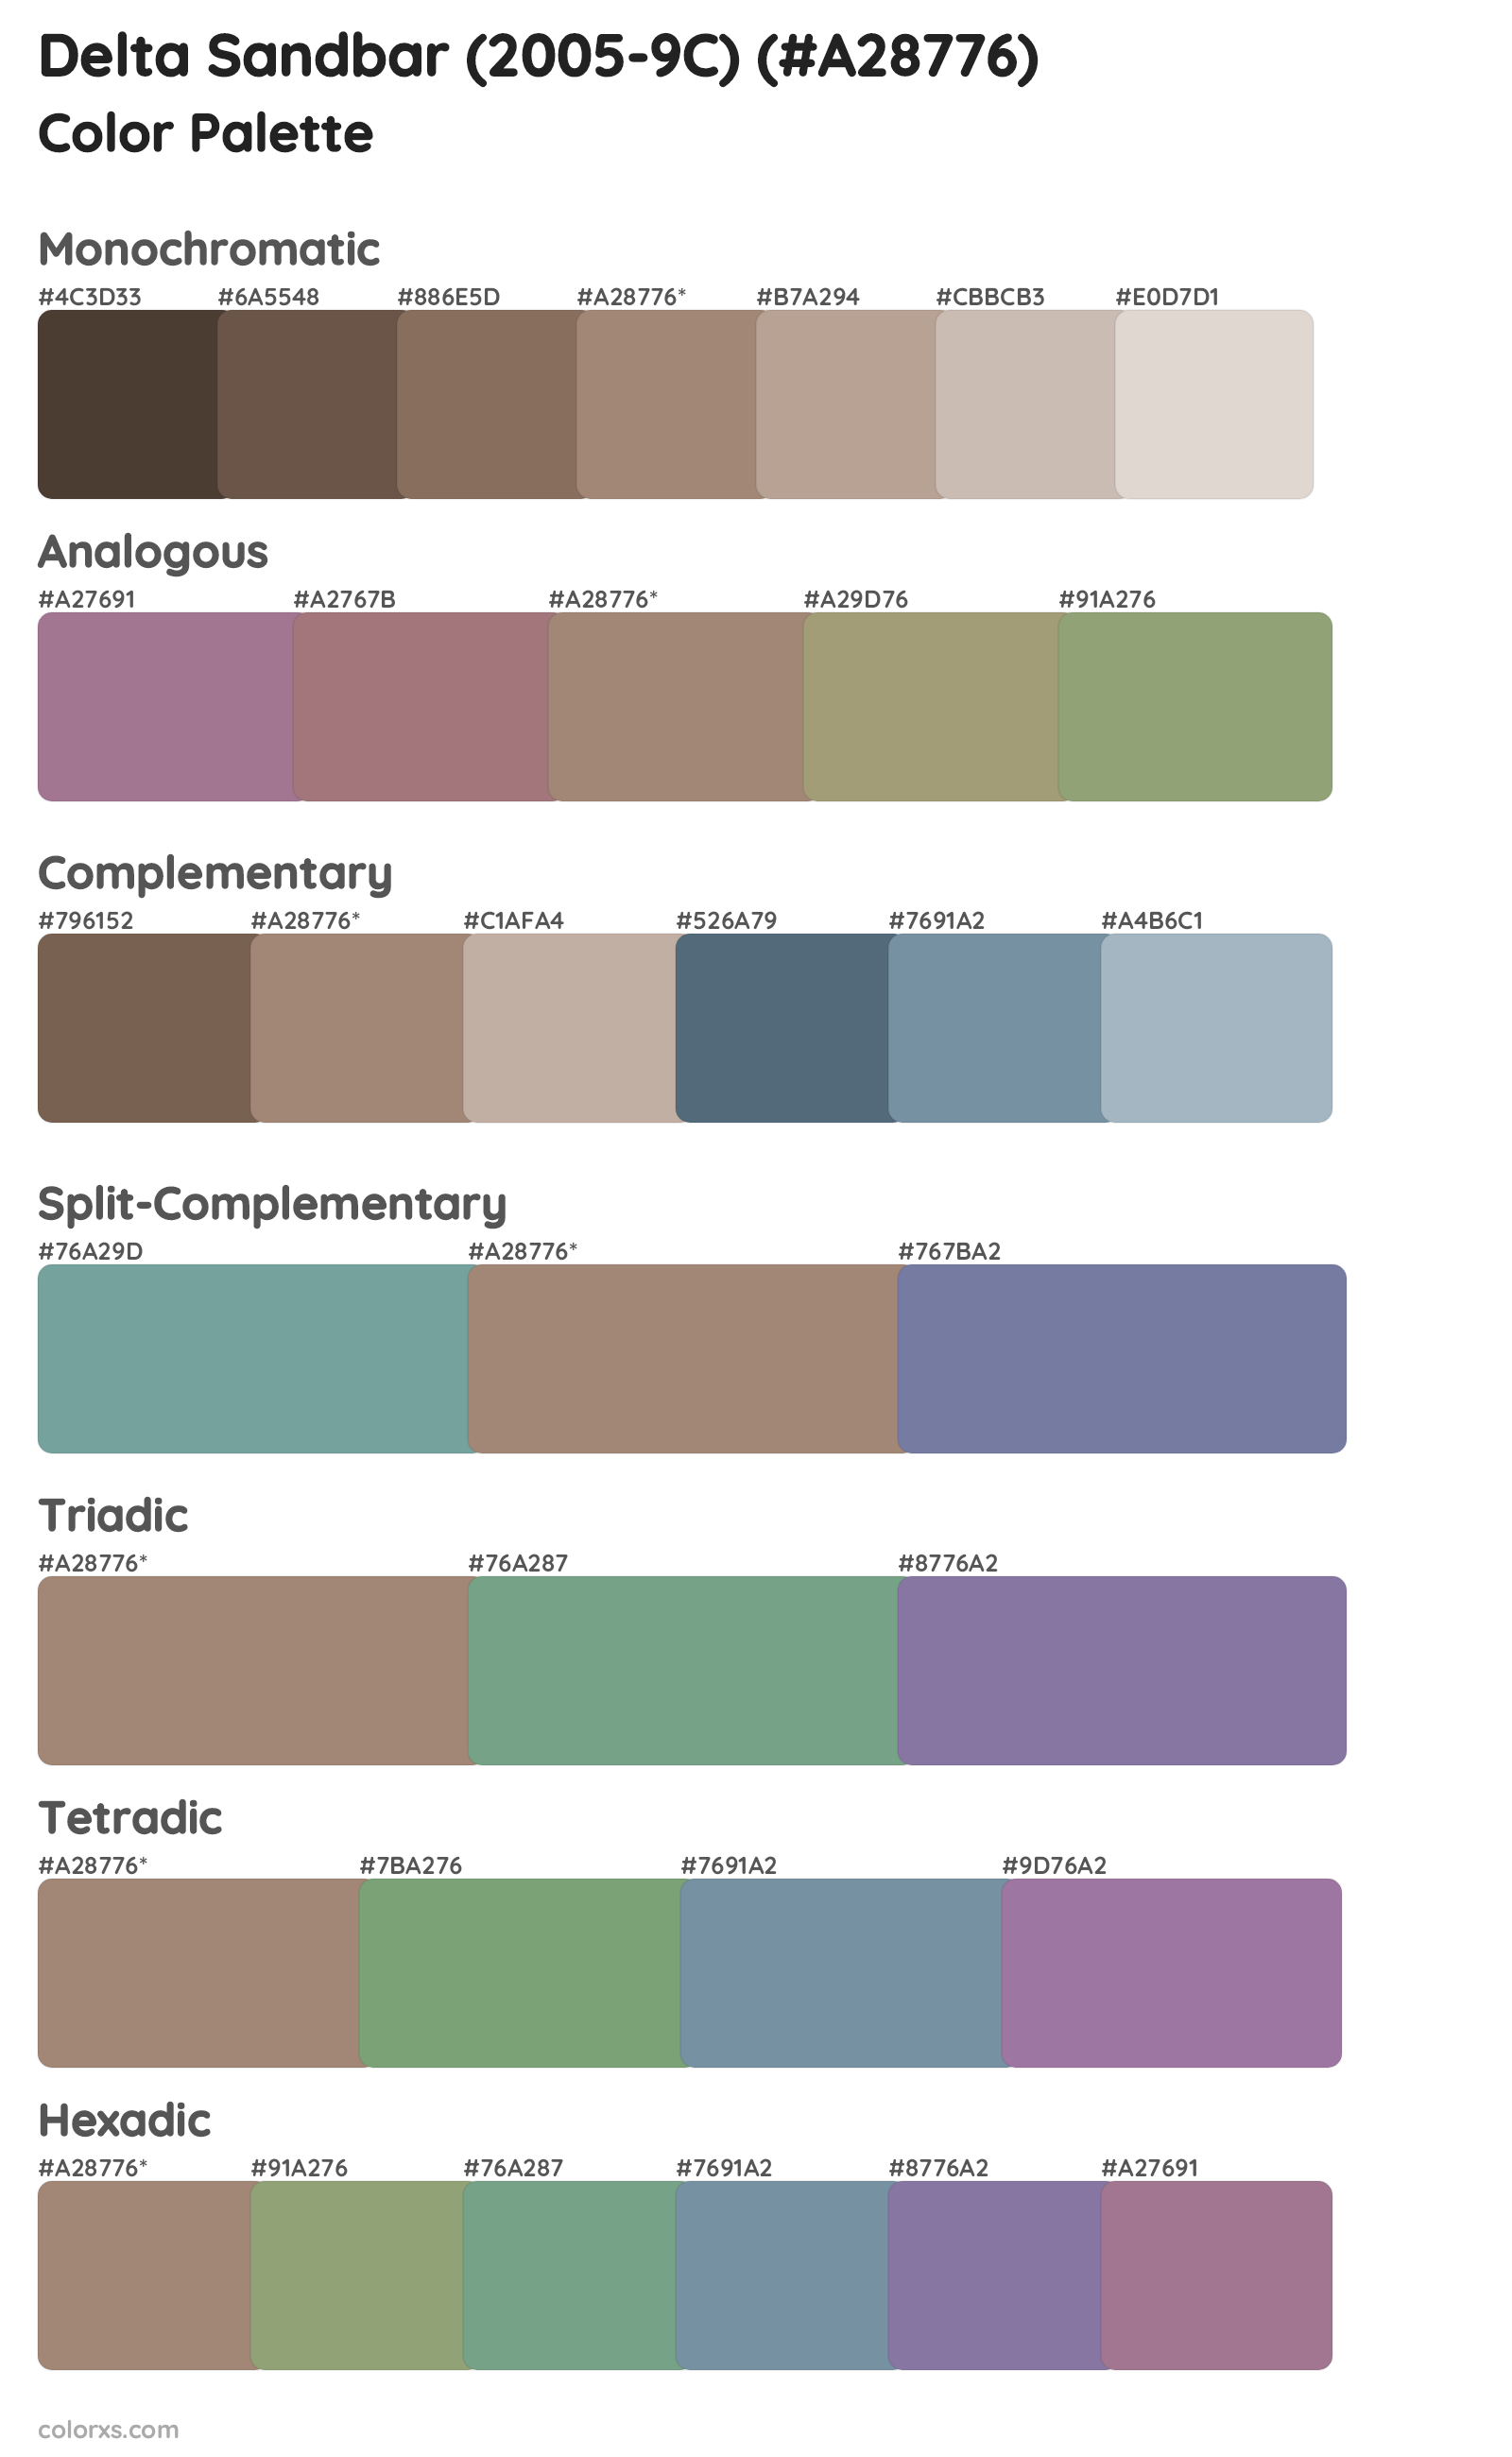 Delta Sandbar (2005-9C) Color Scheme Palettes